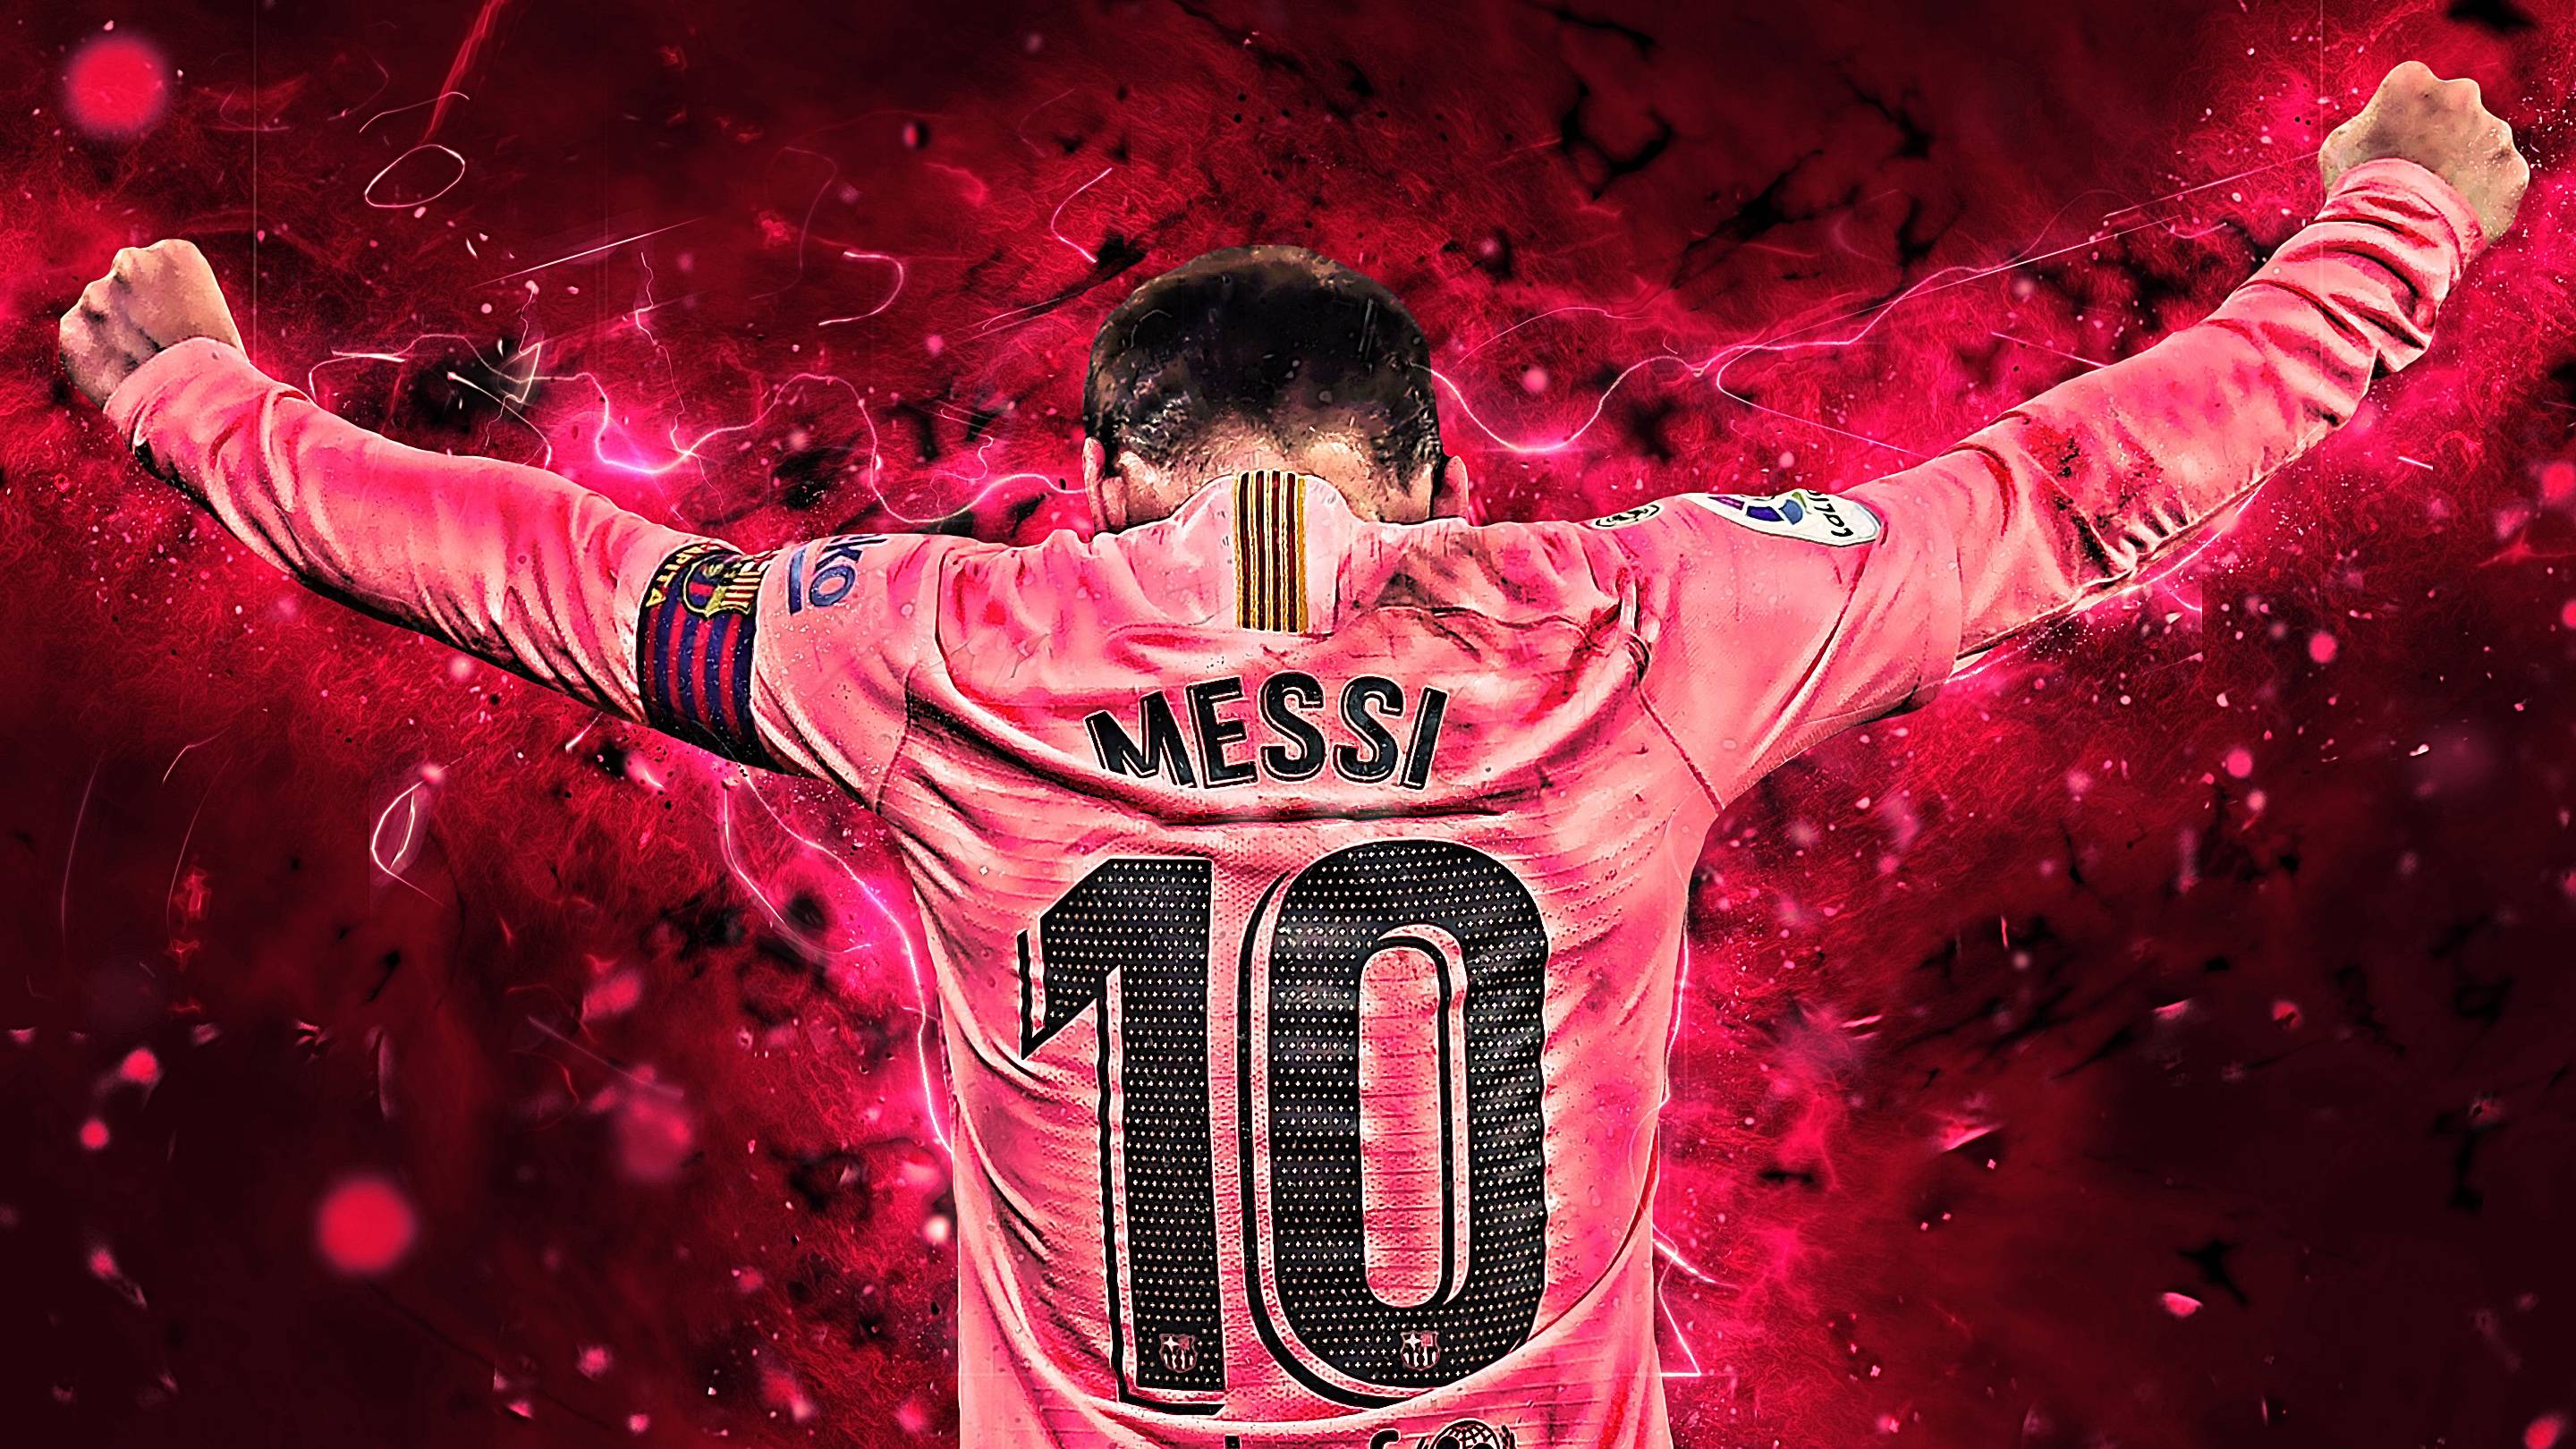 Leo Messi 2019 Wallpapers: Những hình nền đẹp nhất của Leo Messi năm 2019 chắc hẳn sẽ thu hút sự chú ý của các fan hâm mộ bóng đá và Messi. Bạn sẽ được chiêm ngưỡng những đường cong tuyệt vời của siêu sao bóng đá này trong từng tác phẩm nghệ thuật độc đáo.